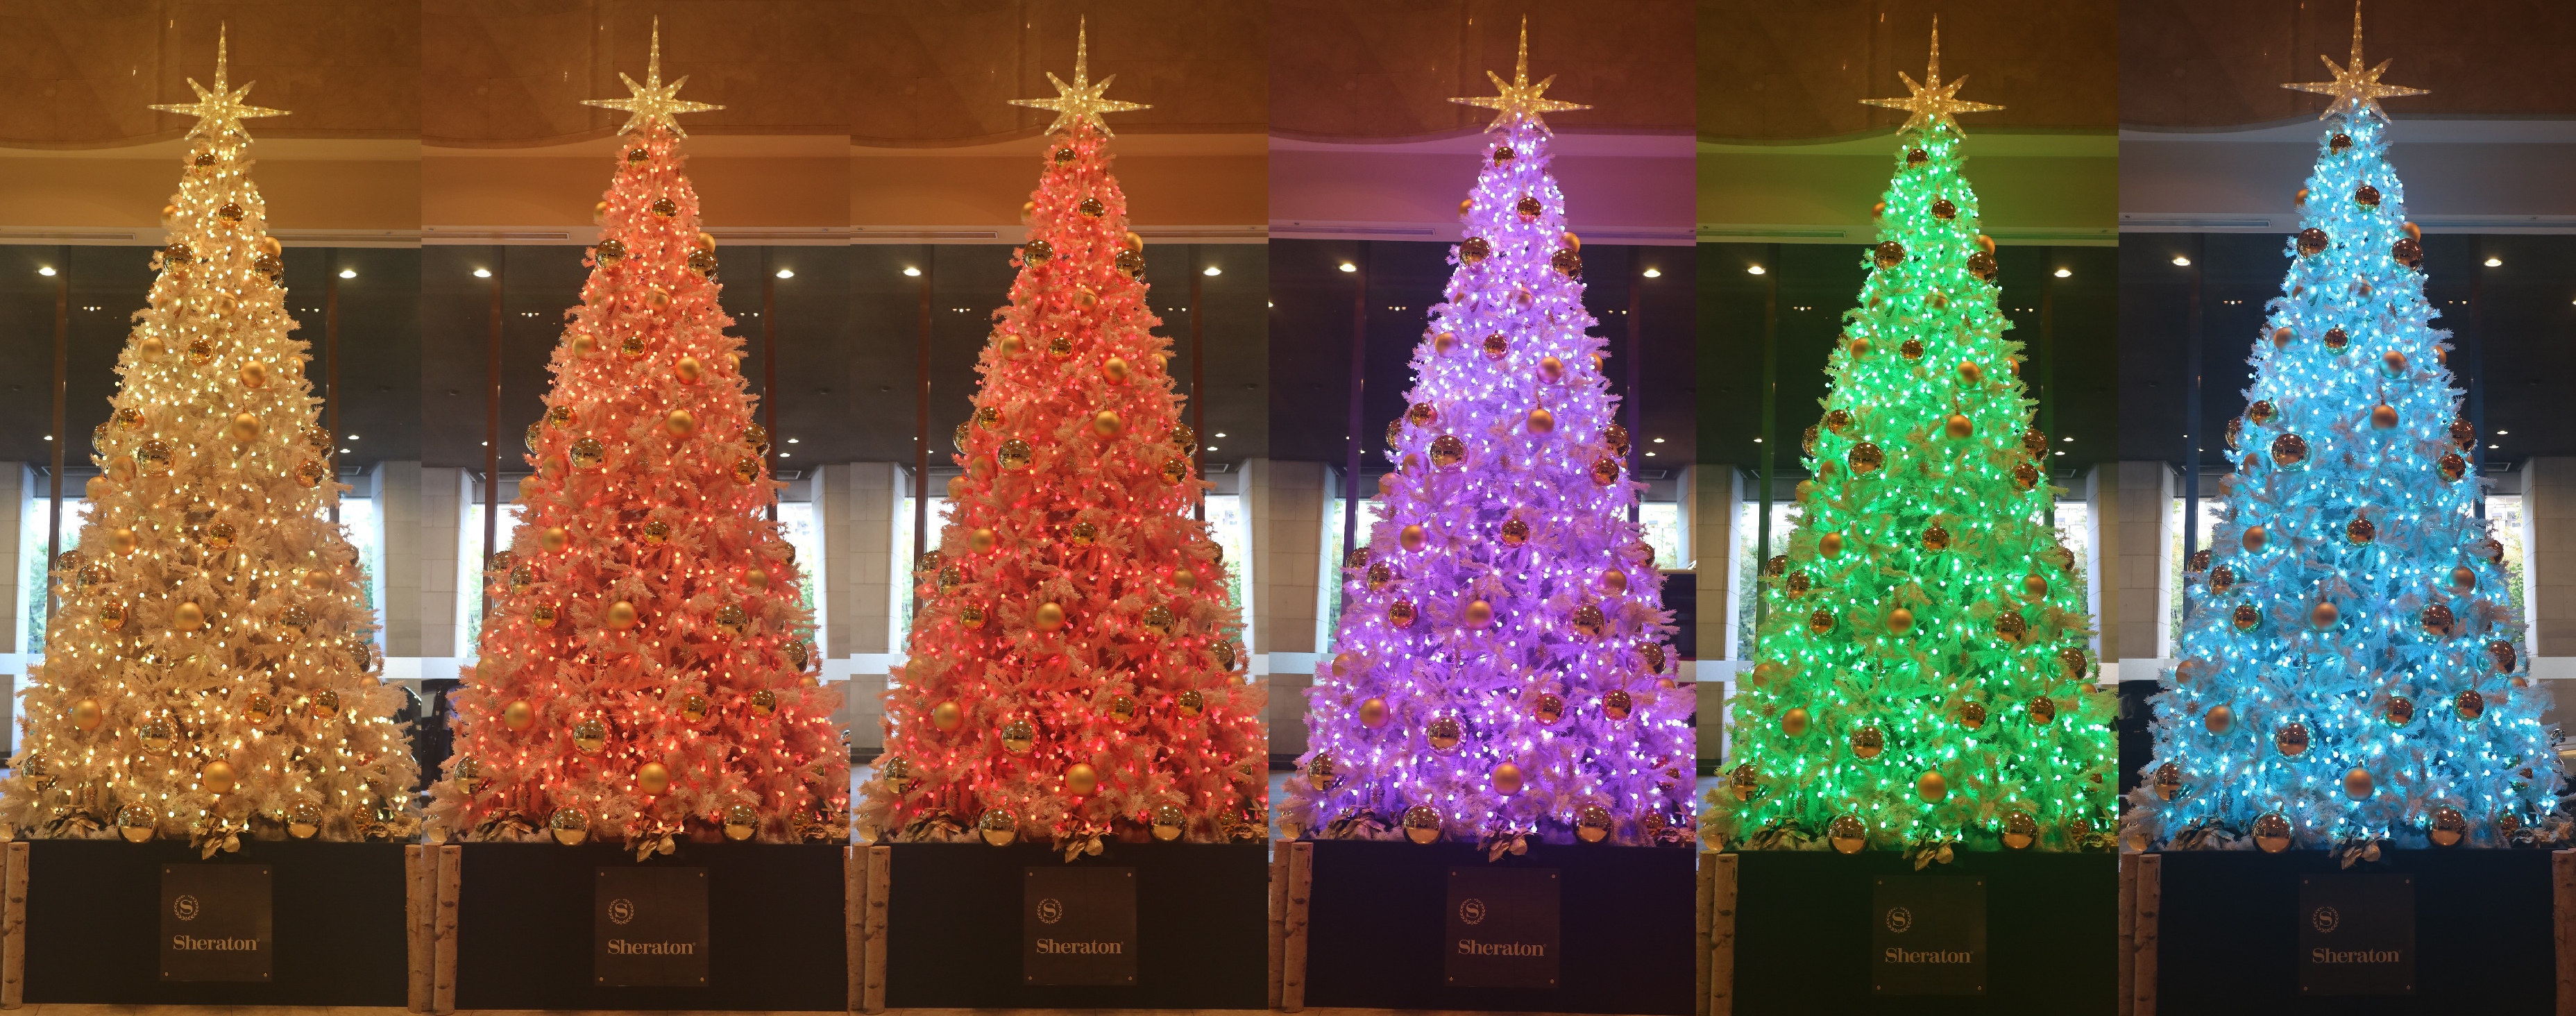 シェラトン都ホテル大阪 6色に変わるイルミネーションツリーや逆さまのツリーなどフォトジェニックなクリスマス 装飾を実施 都ホテルズ リゾーツのプレスリリース